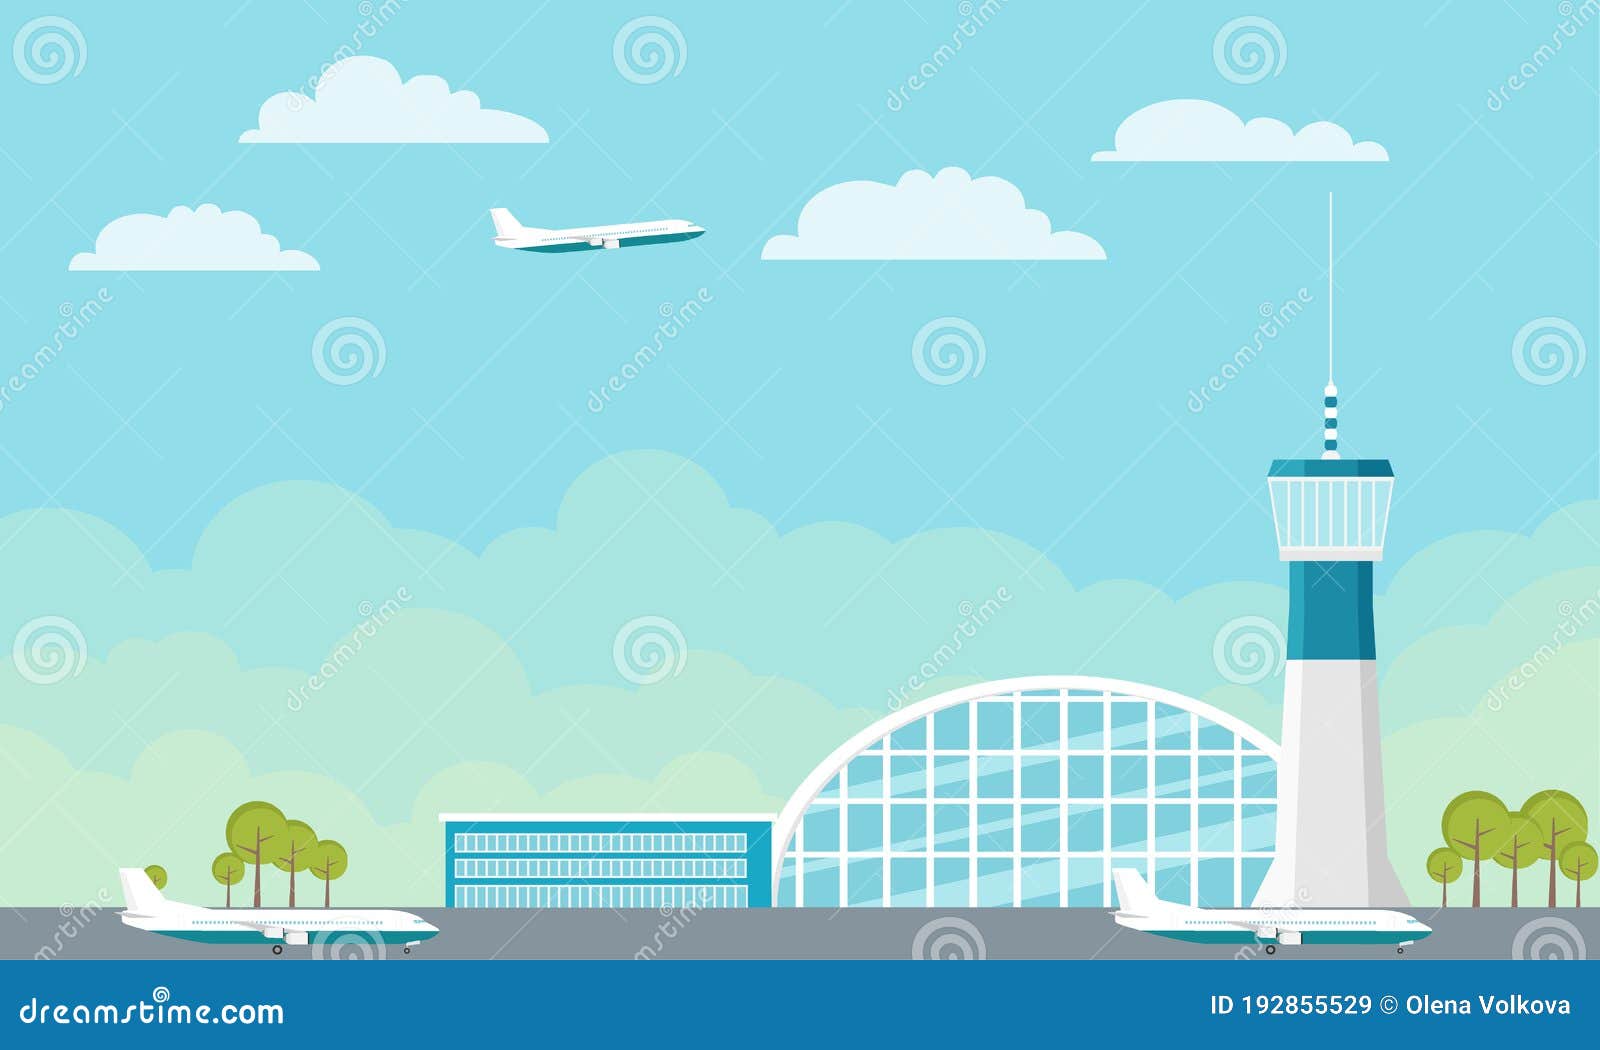 El Aeropuerto. Construcción De Aeropuertos Con Terminal De Torre De Control  Y Pista De Aterrizaje. Ilustración De Dibujos Animados Stock de ilustración  - Ilustración de moderno, concepto: 192855529